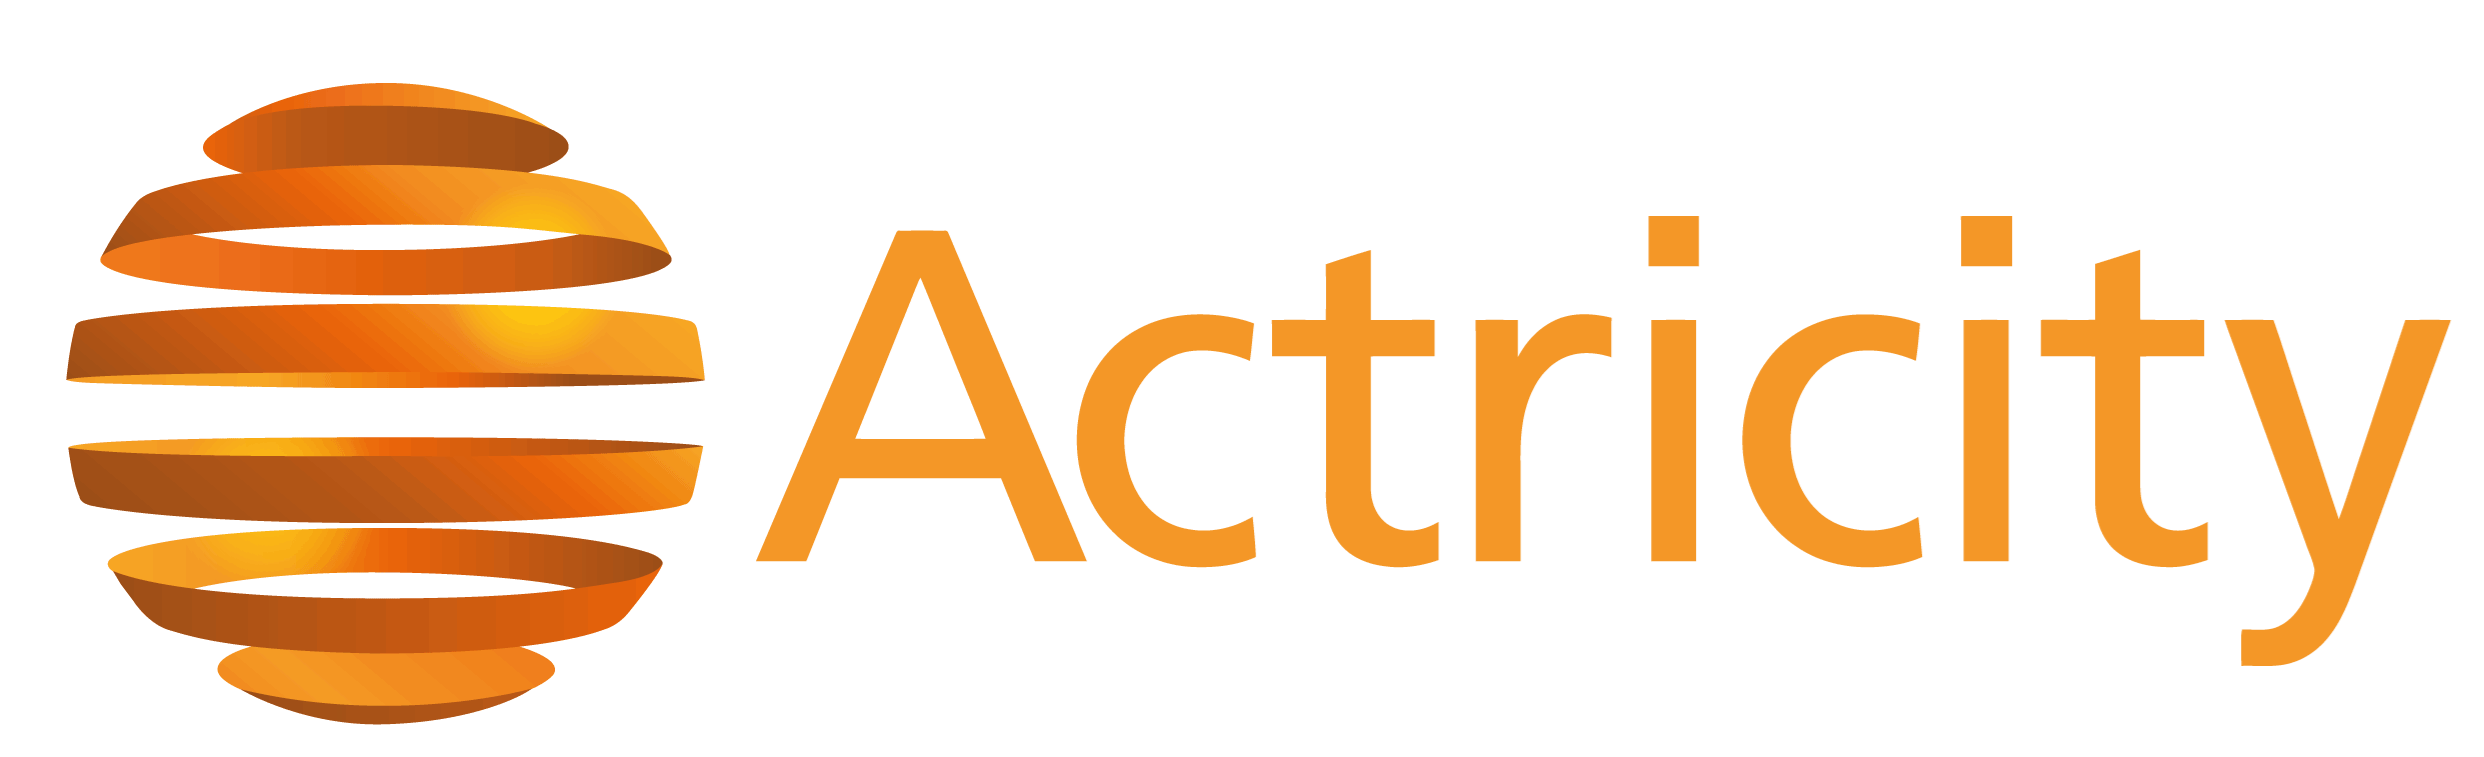 Actricity - ERP für Dienstleister, Handel und Service